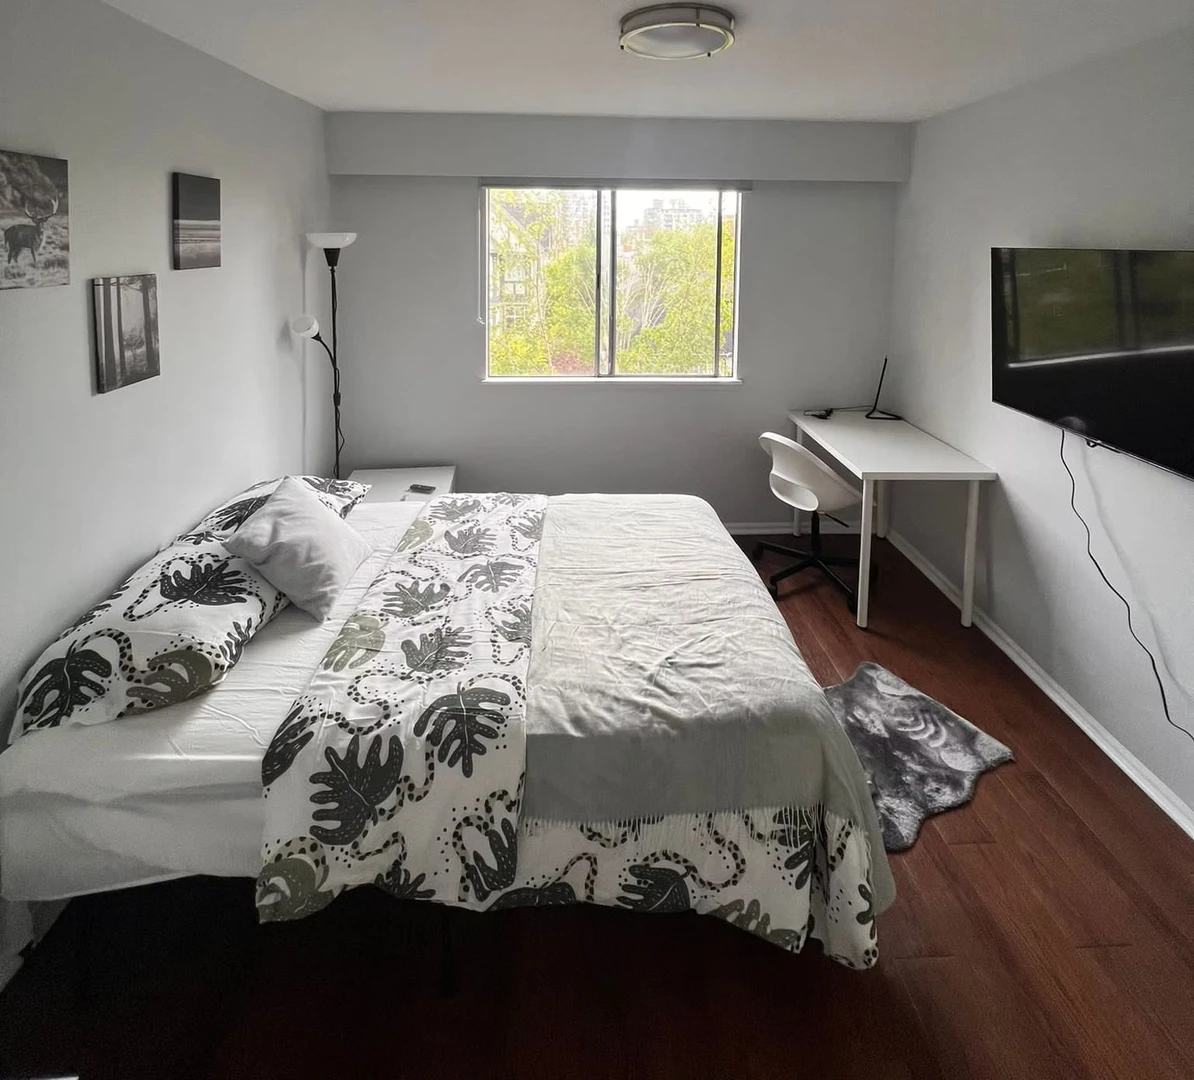 Alquiler de habitación en piso compartido en Vancouver